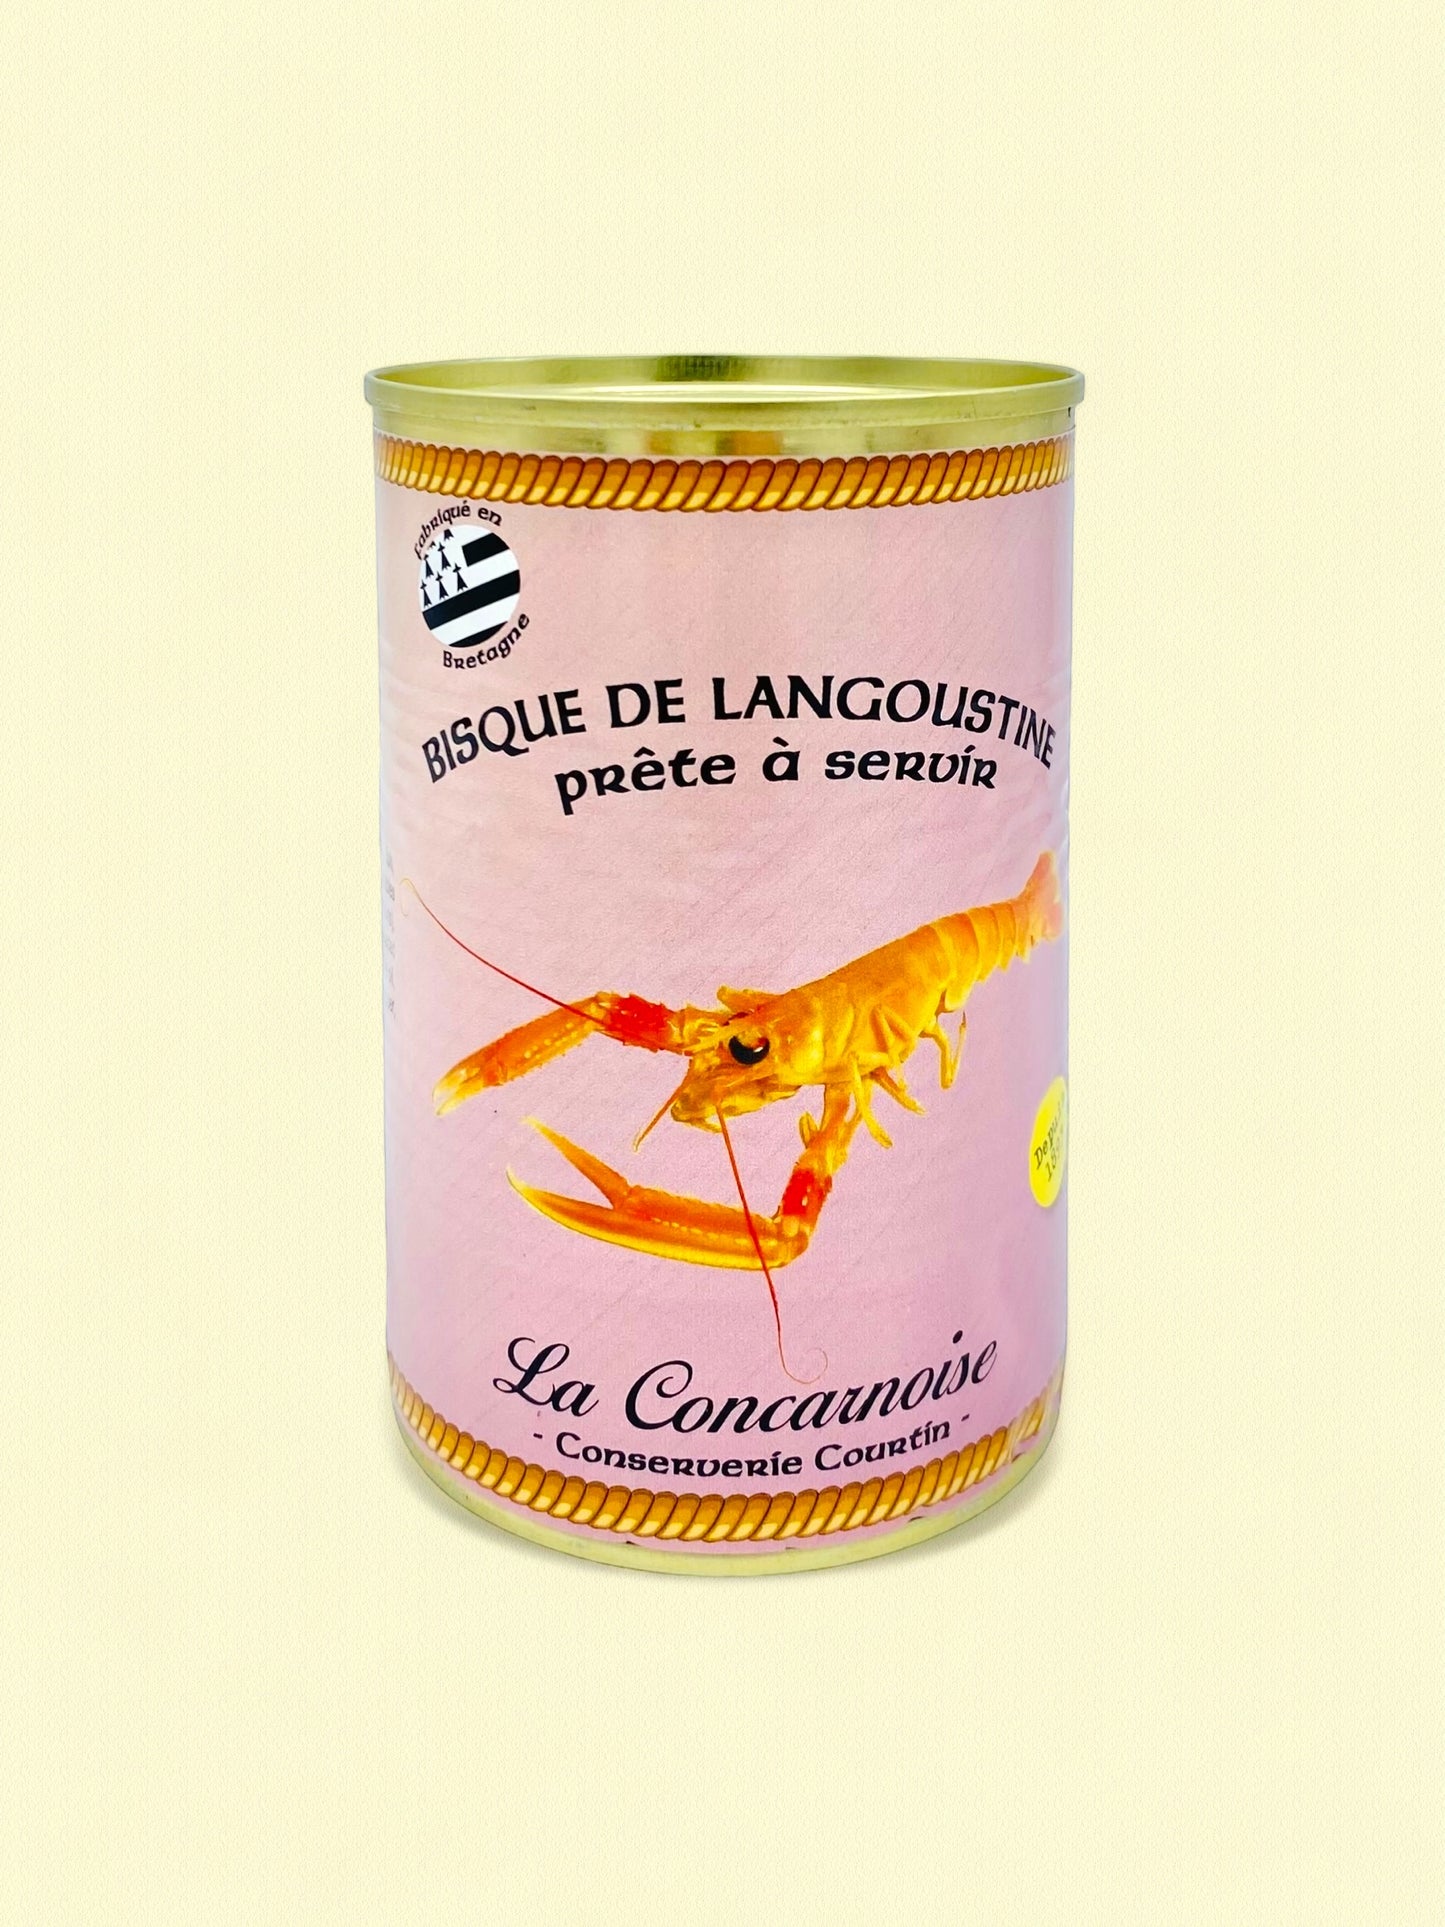 Bisque de langoustine